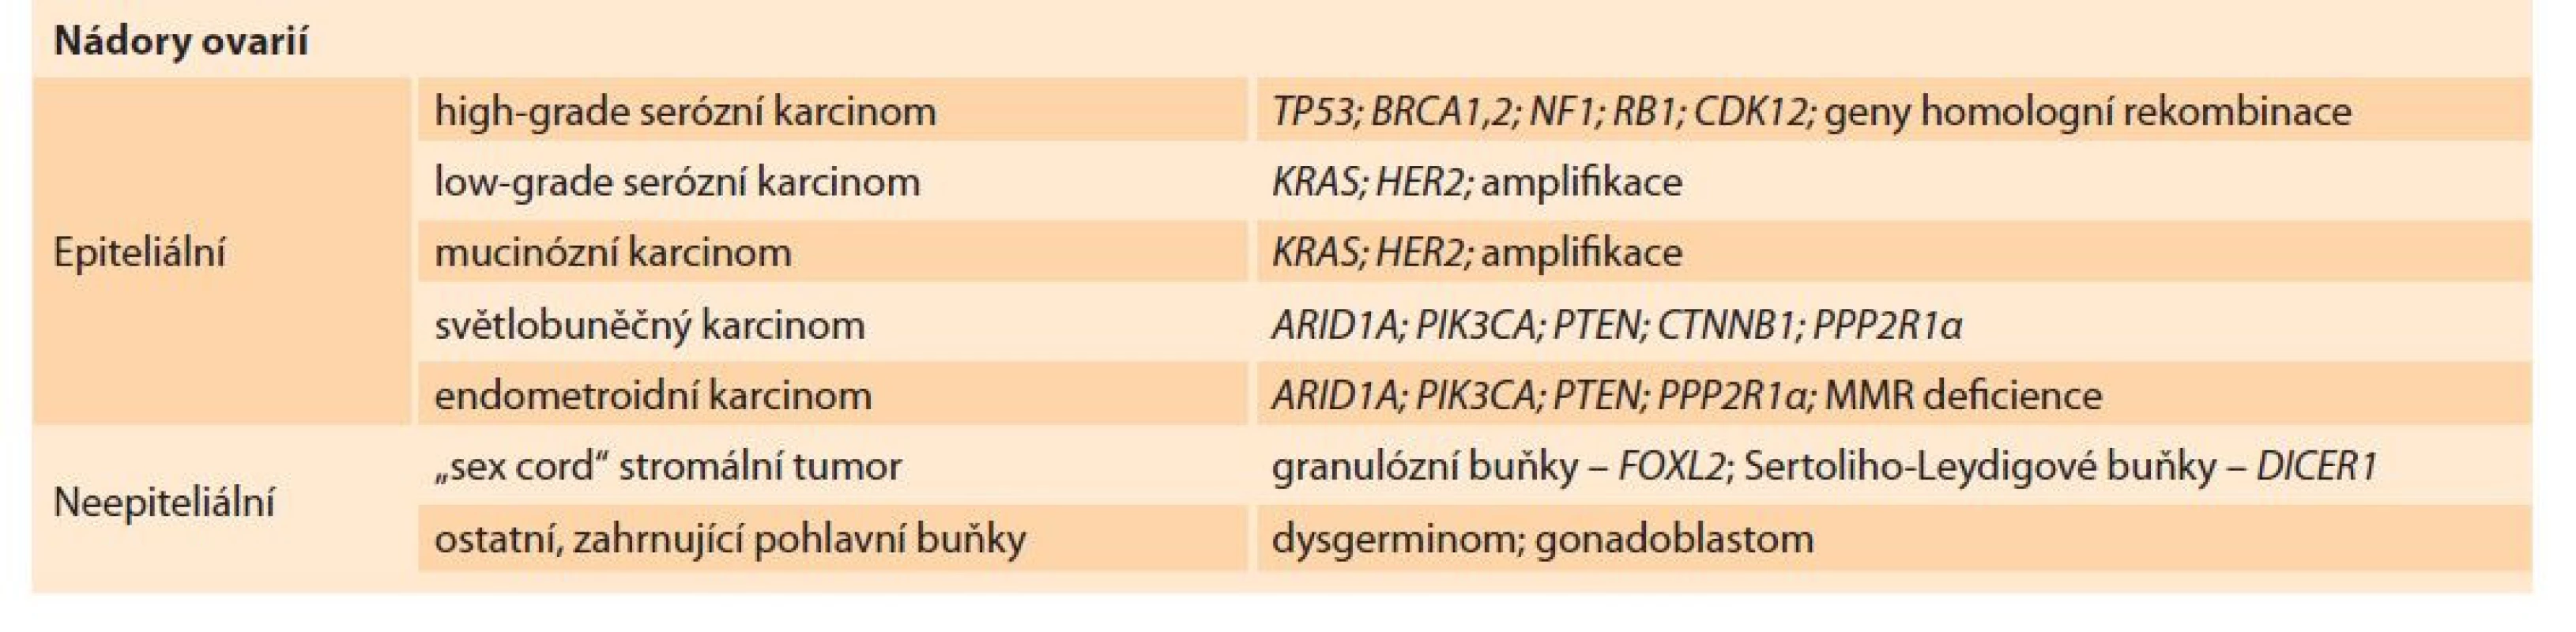 Histologické subtypy ovariálních nádorů [33].<br>
Tab. 1. Histological subtypes of ovarian tumors [33].